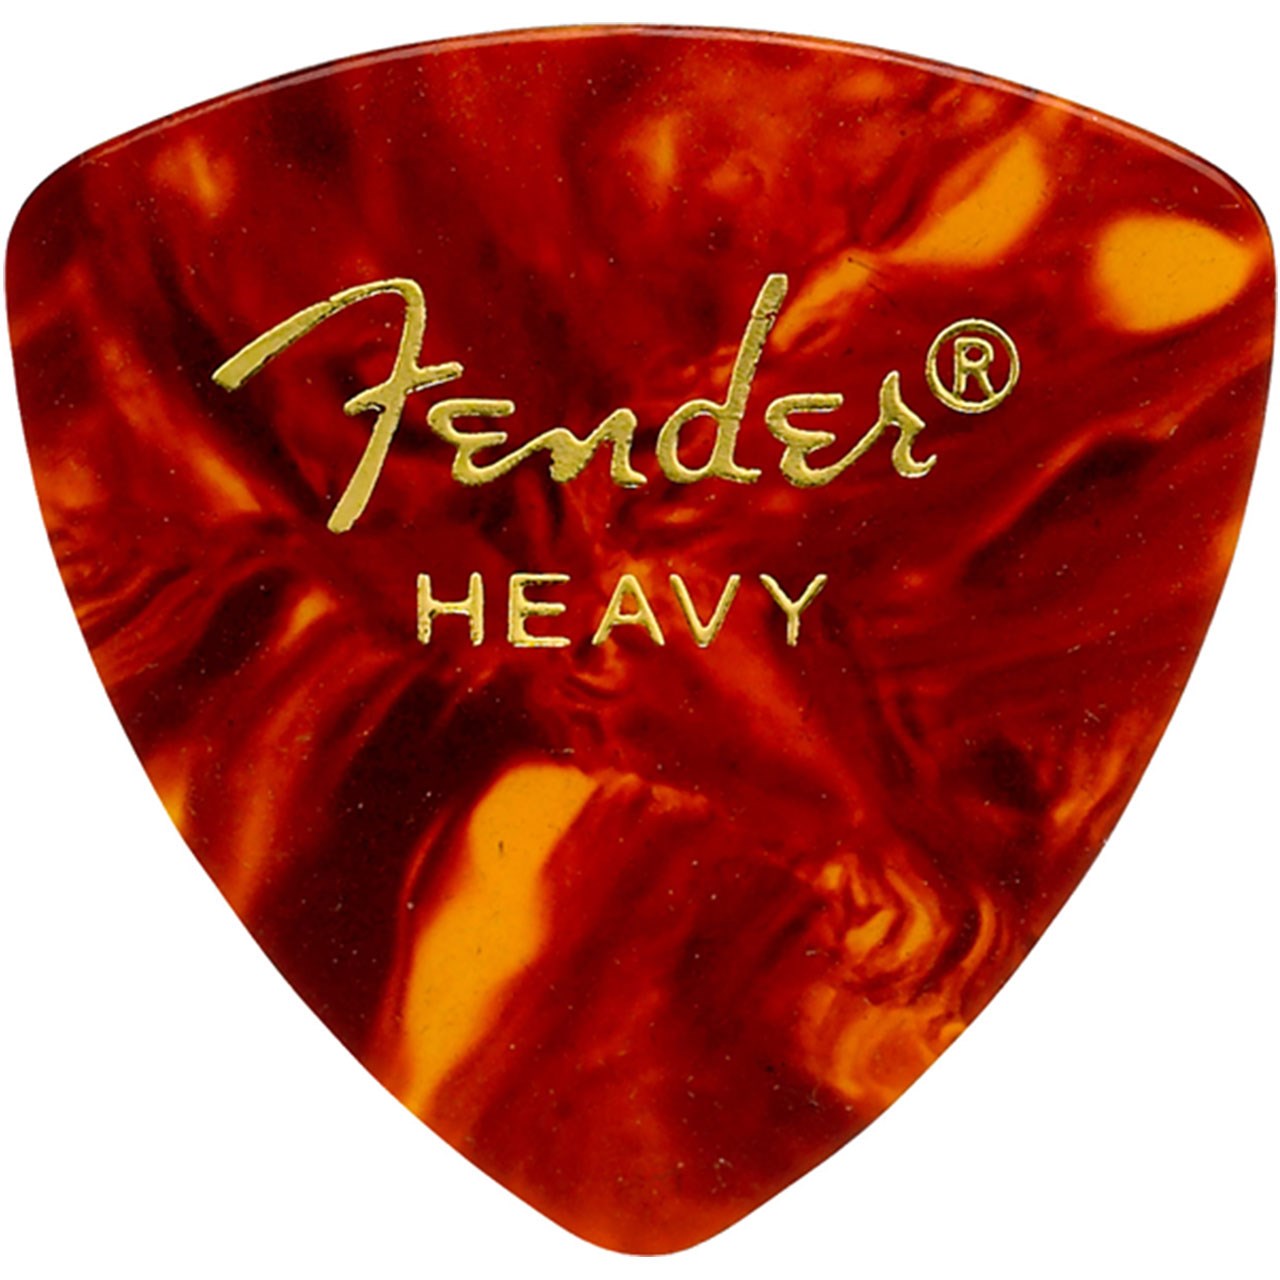 پیک گیتار فندر مدل 346 SHELL Heavy بسته دوازده عددی